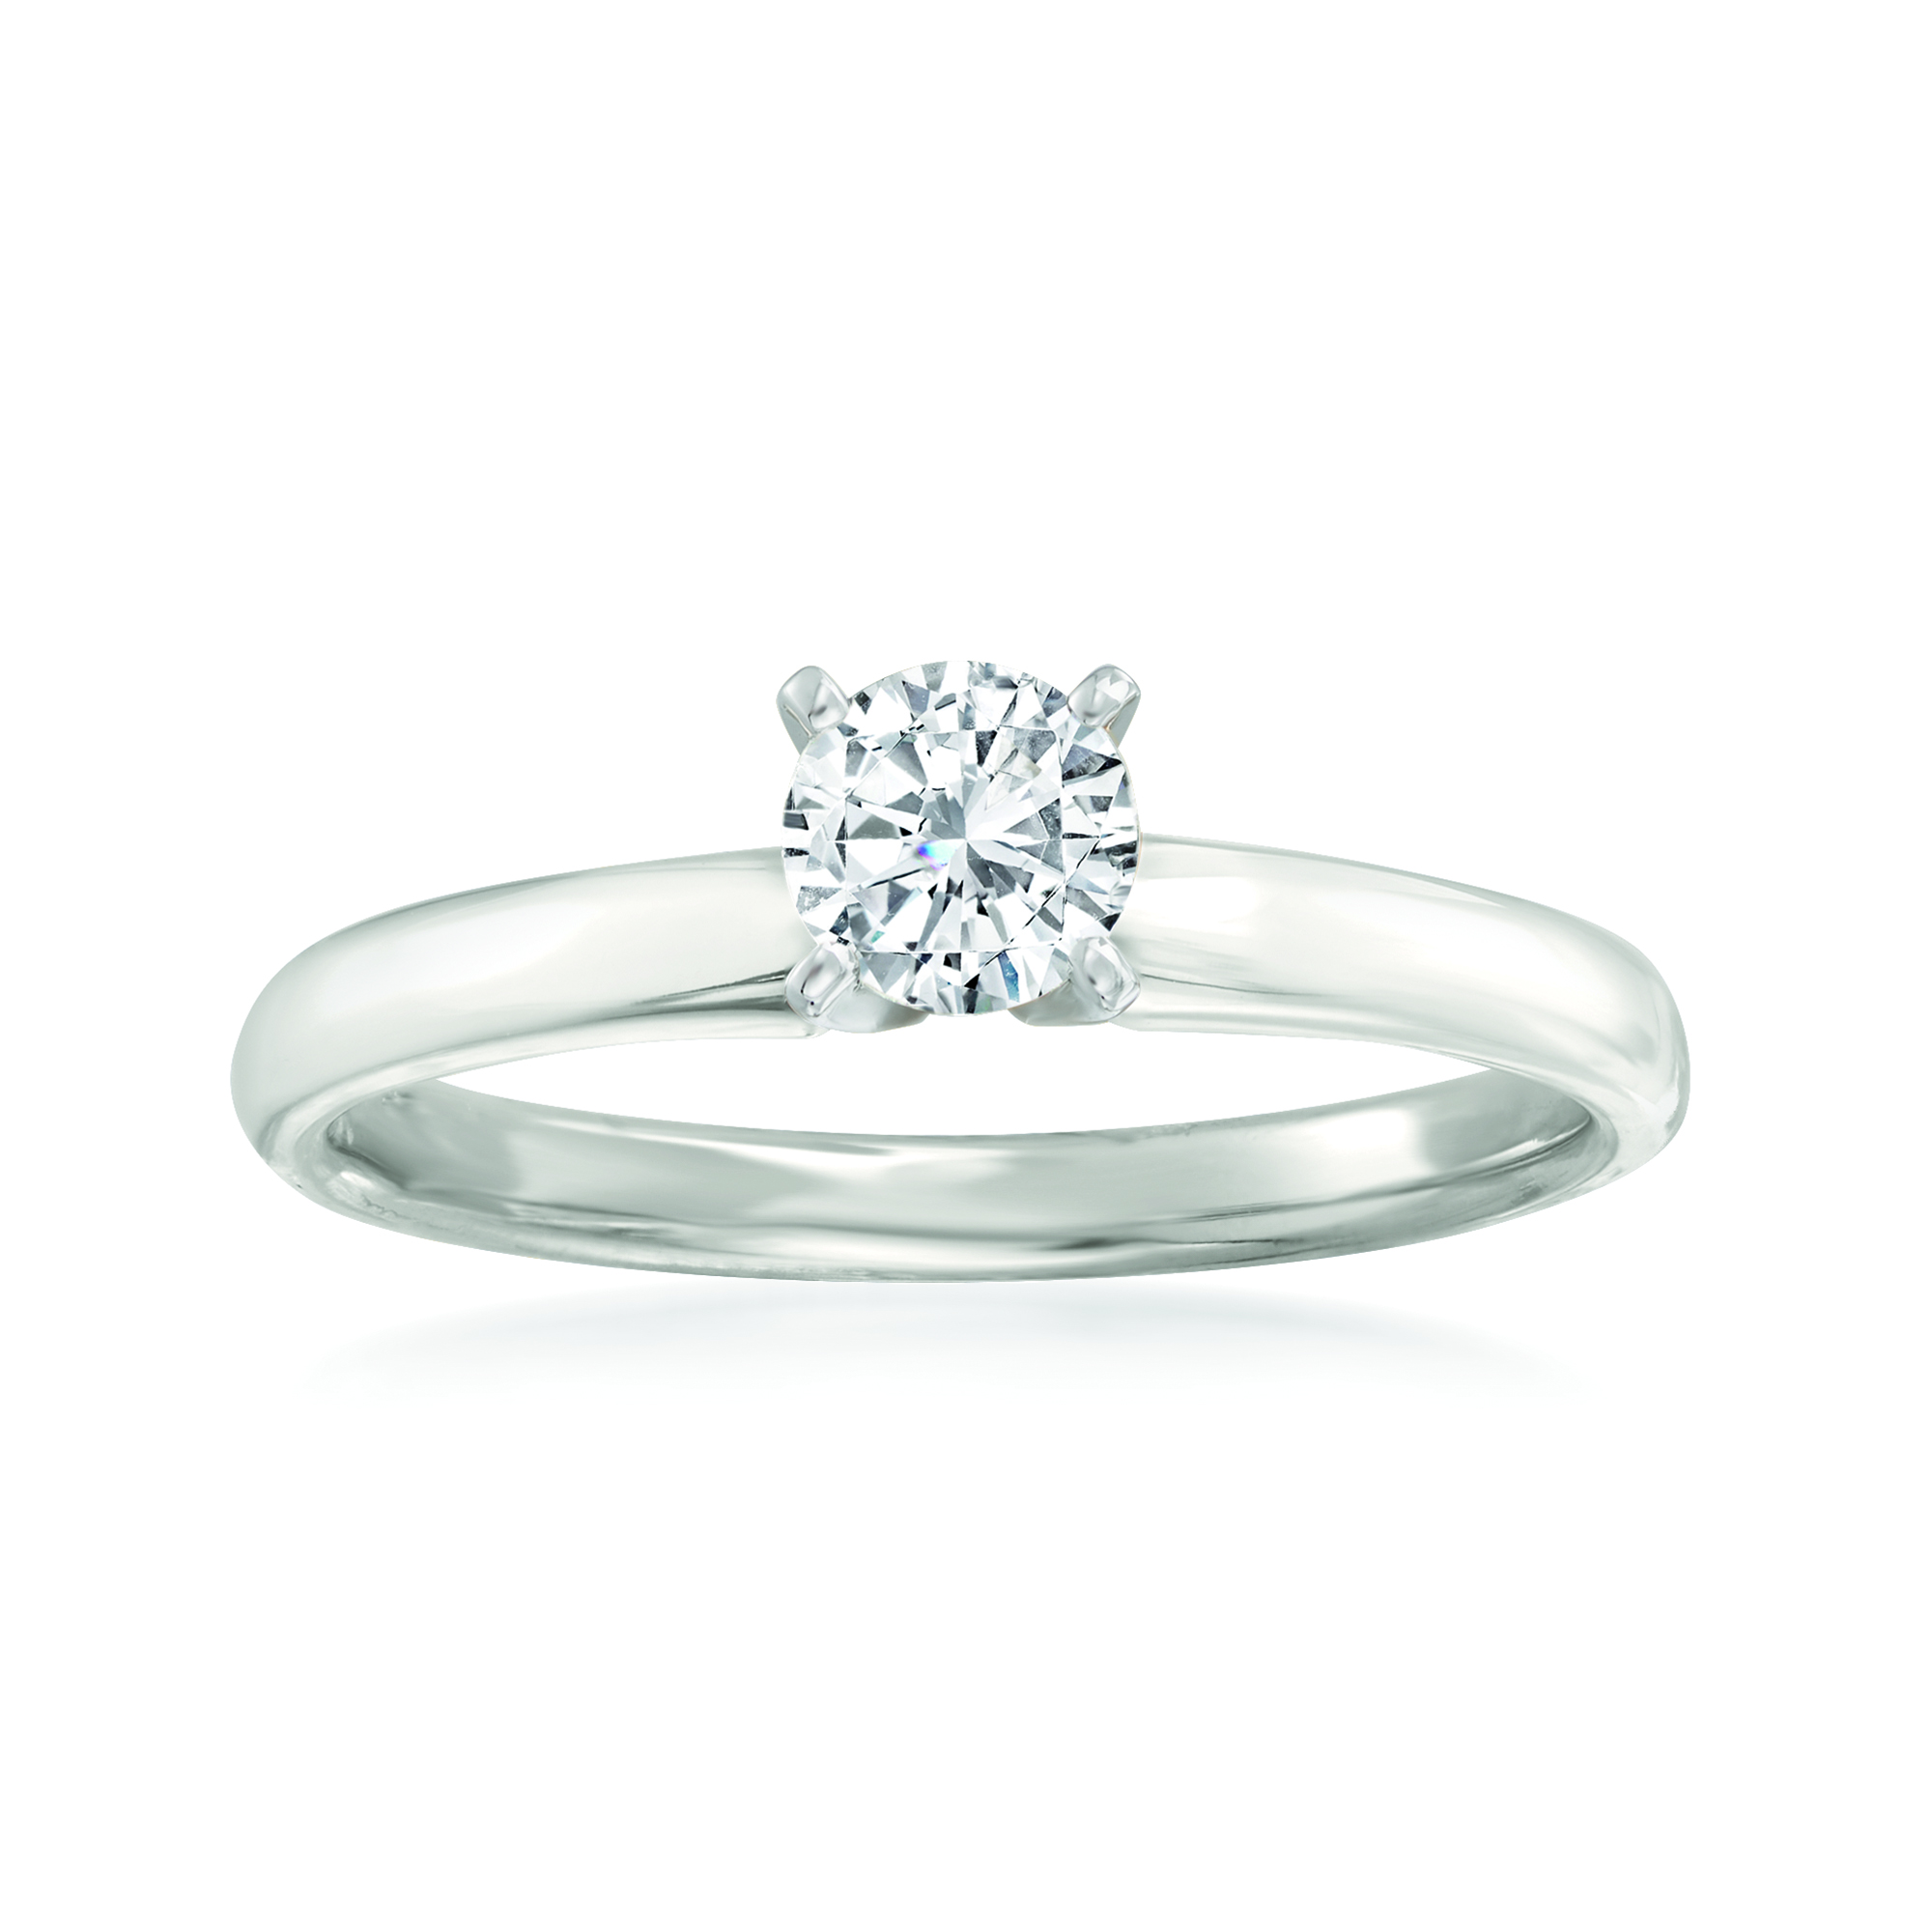 50 Carat Diamond Solitaire Ring in 14kt White Gold | Ross-Simons